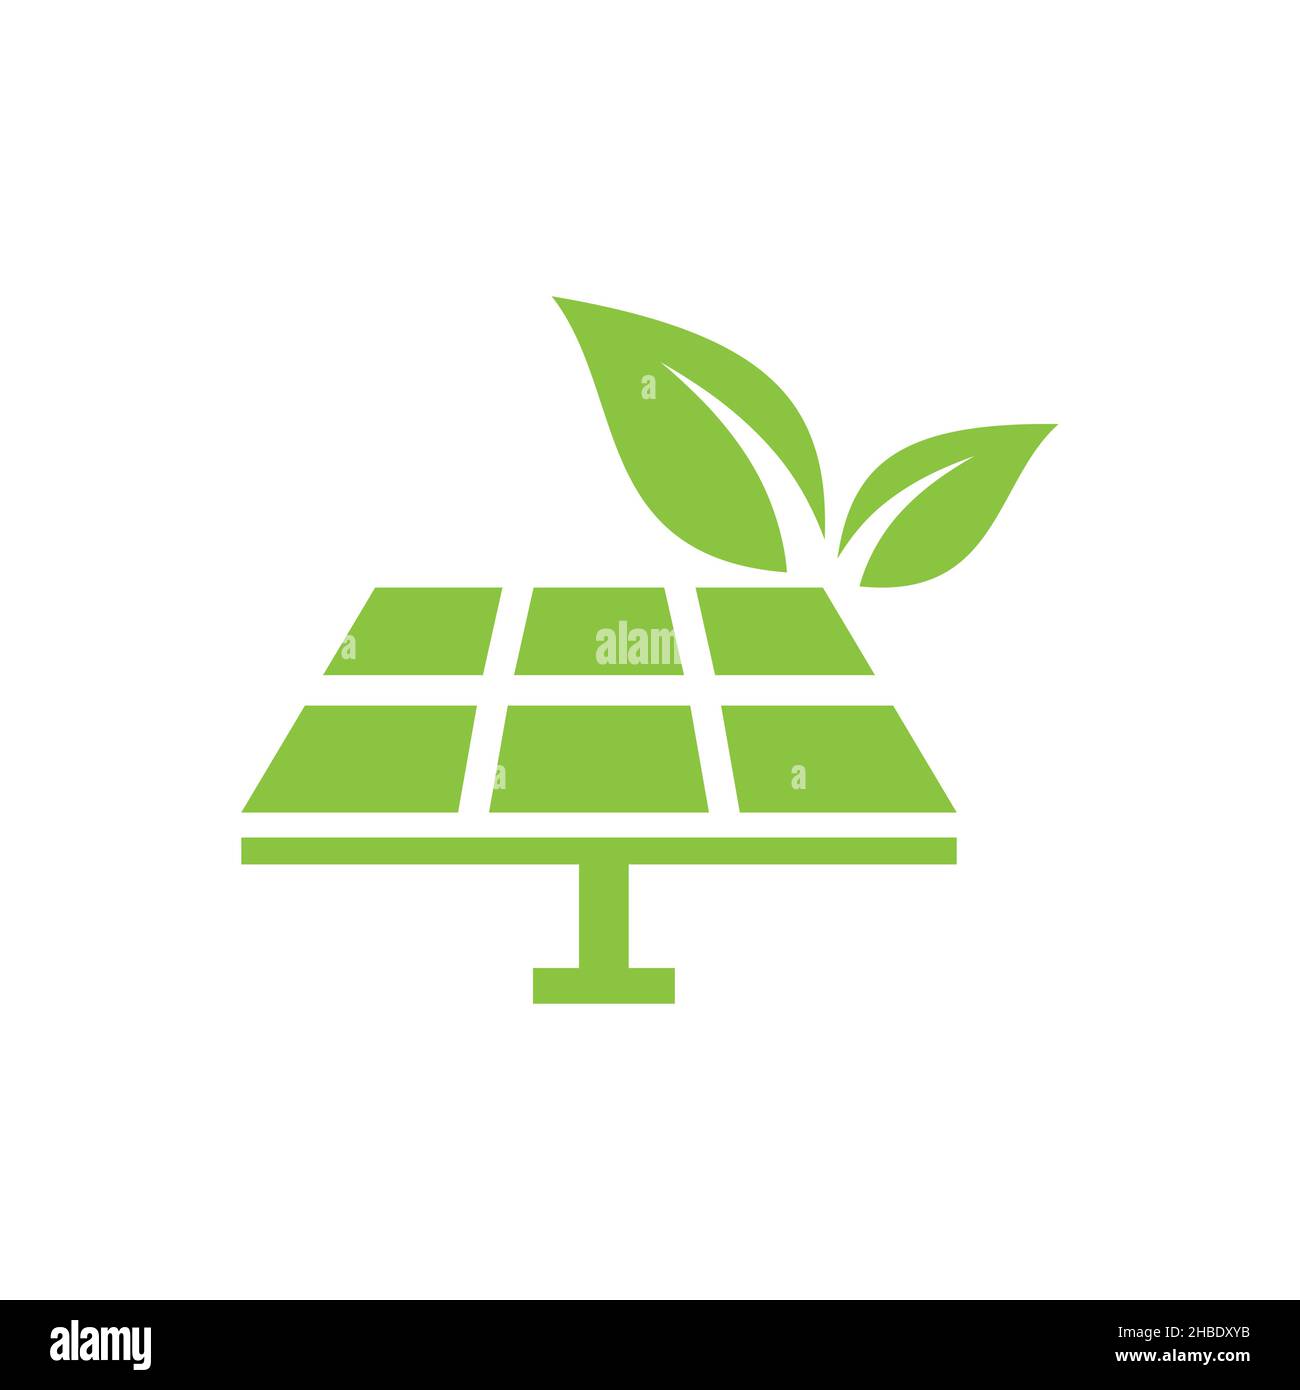 Pannello solare con icona vettoriale riempita a foglia. Simbolo verde di energia. Illustrazione Vettoriale